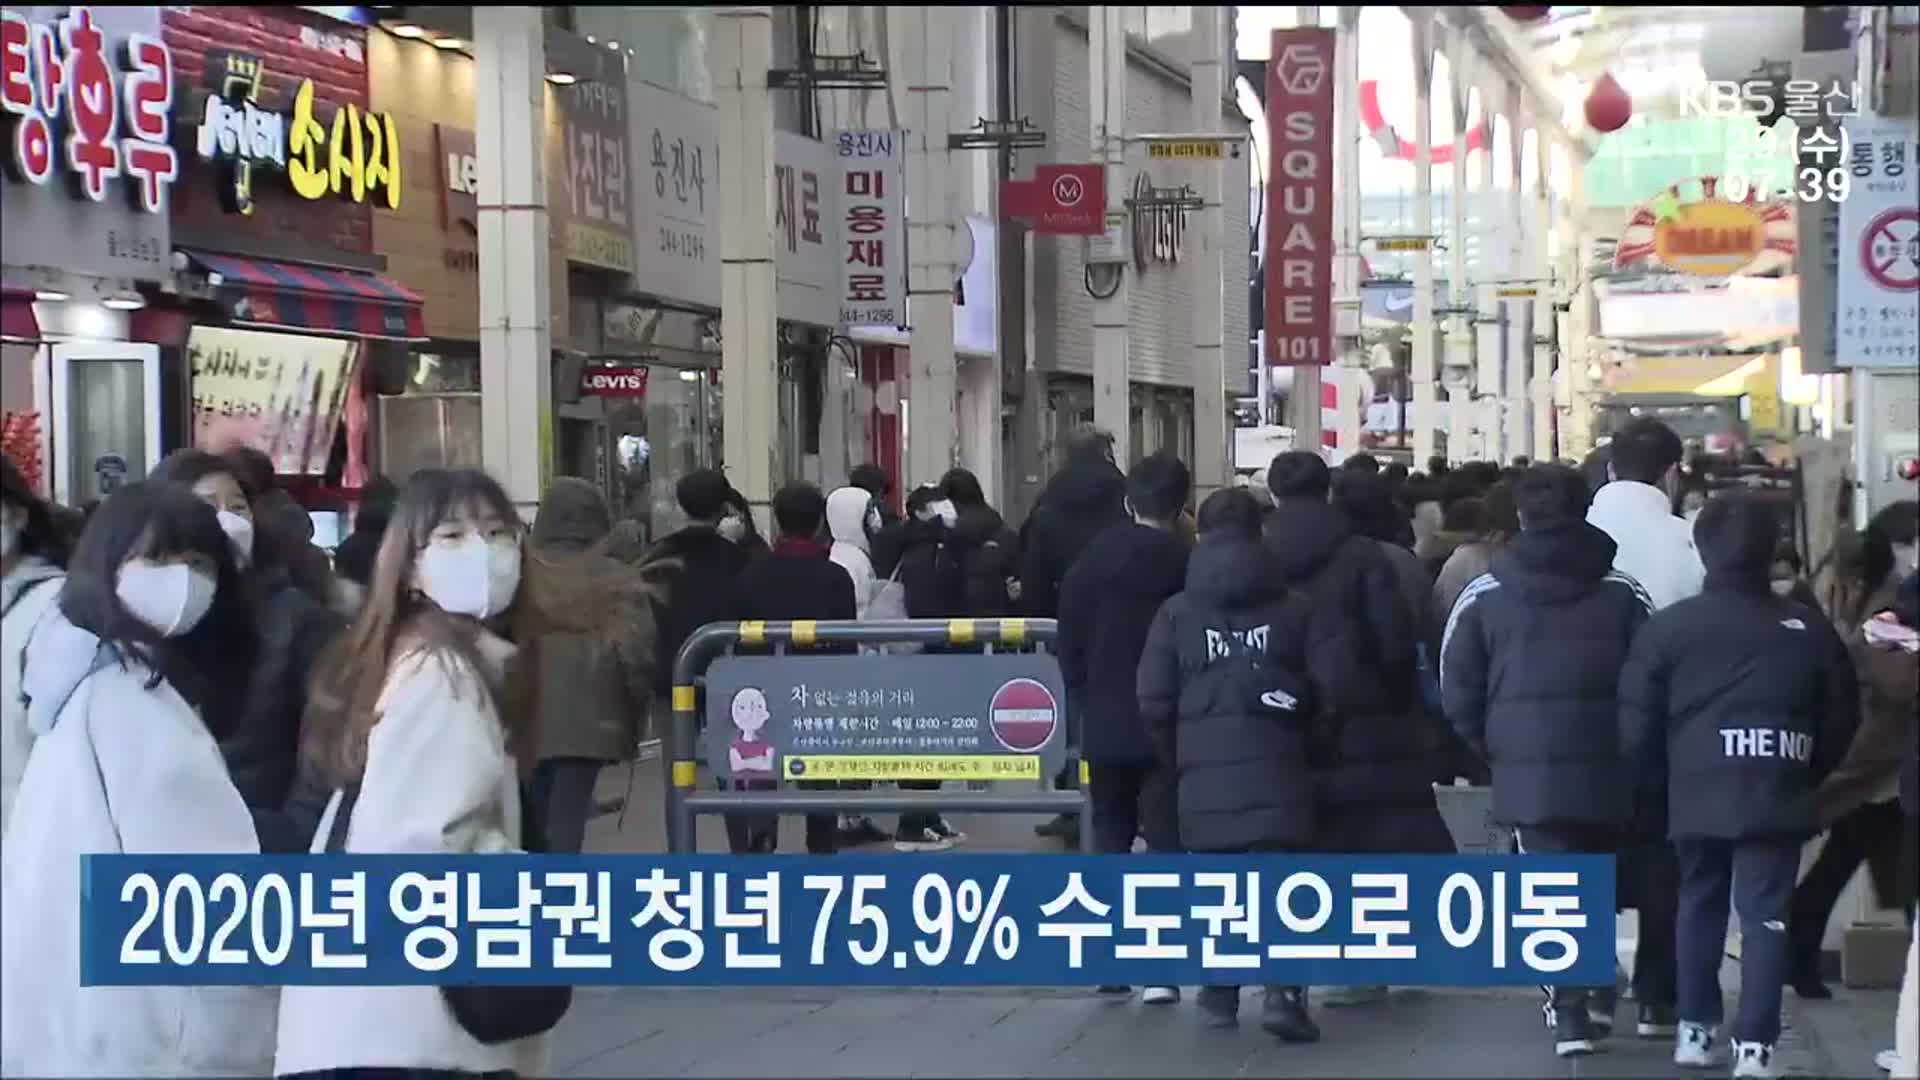 2020년 영남권 청년 75.9% 수도권으로 이동